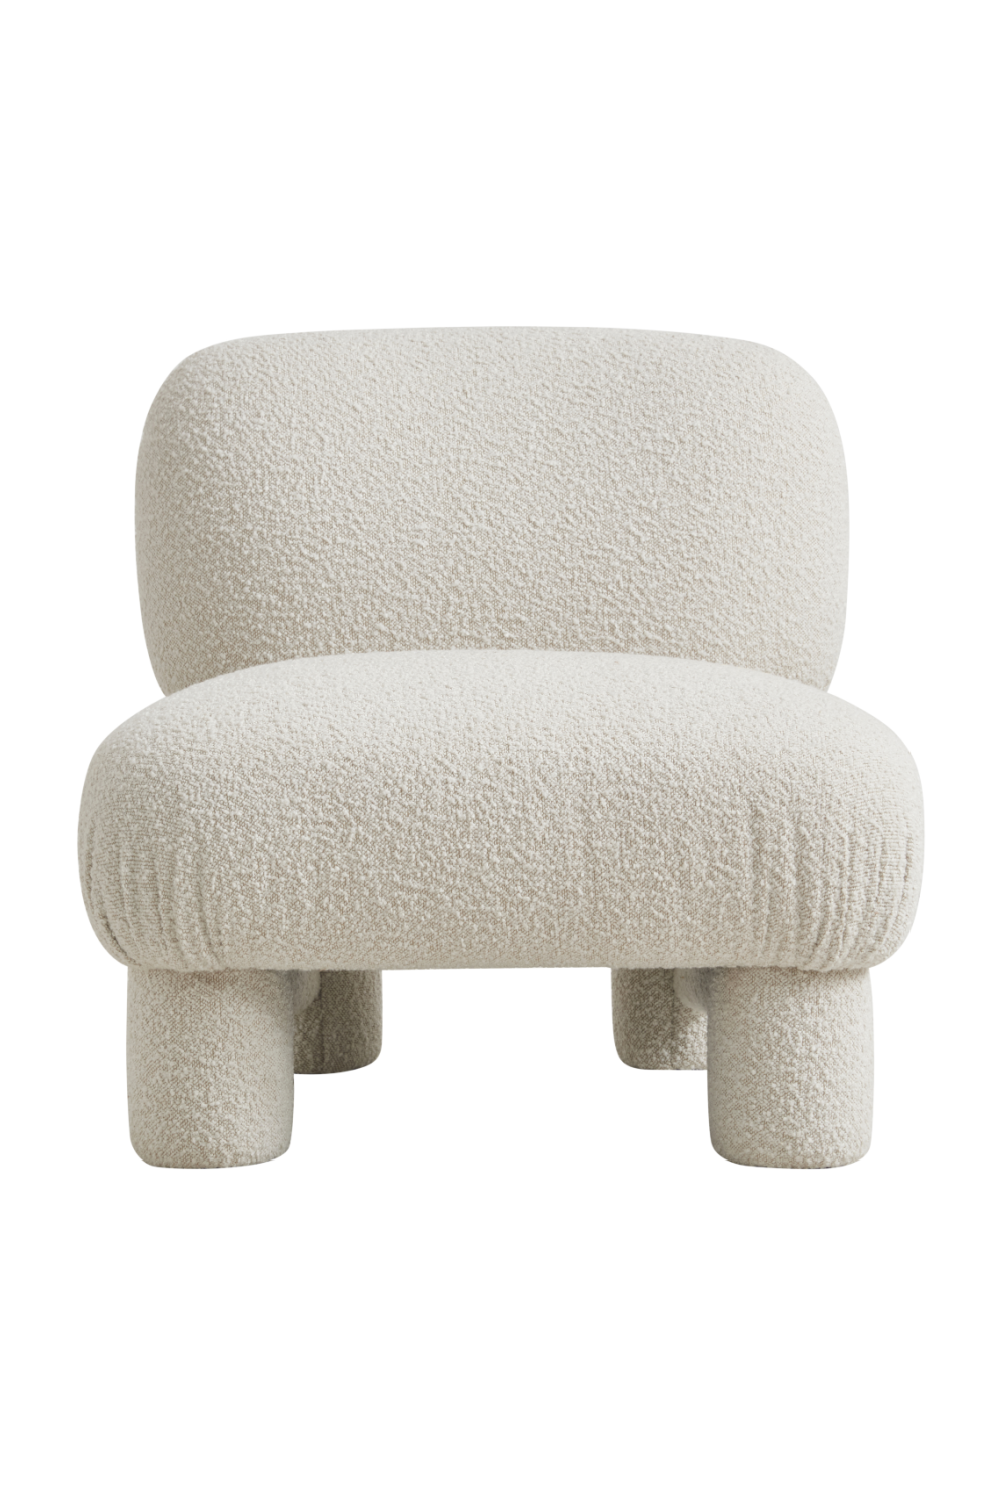 Off-White Bouclé Japandi Accent Chair | Andrew Martin Bella | Oroa.com